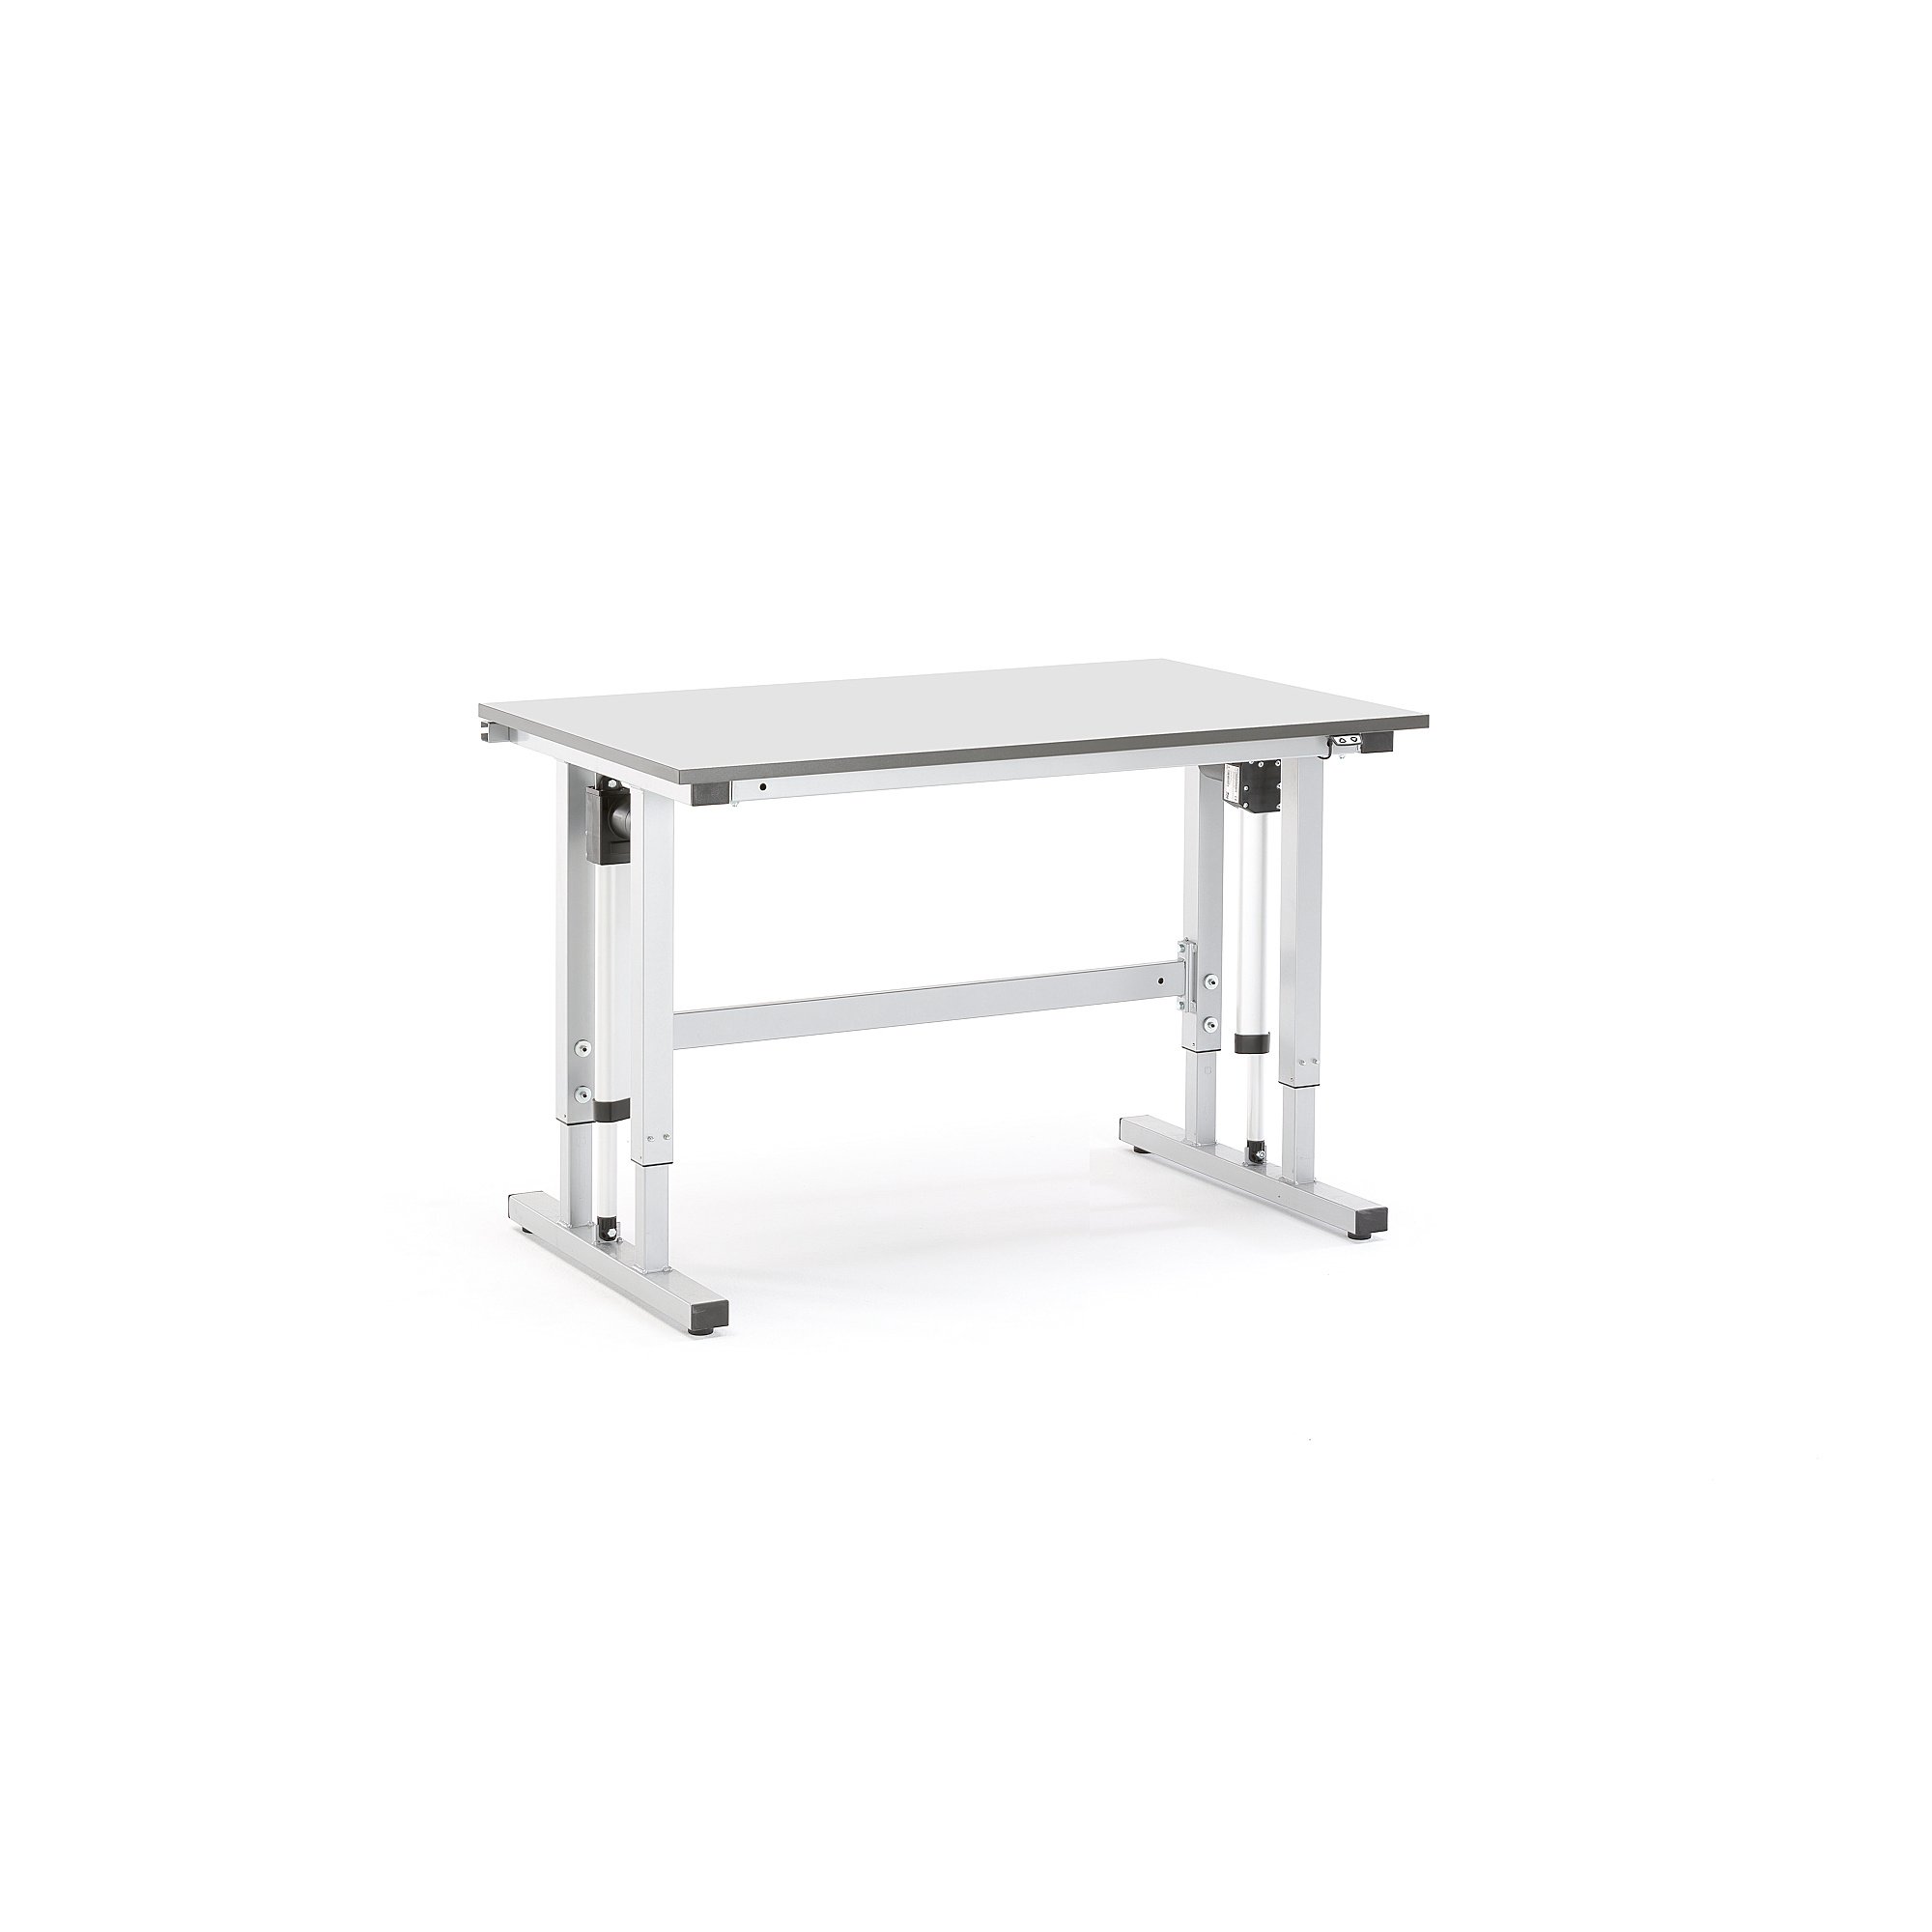 Pracovní stůl MOTION, elektrické polohování, 300 kg, 1200x800 mm, HPL, šedá